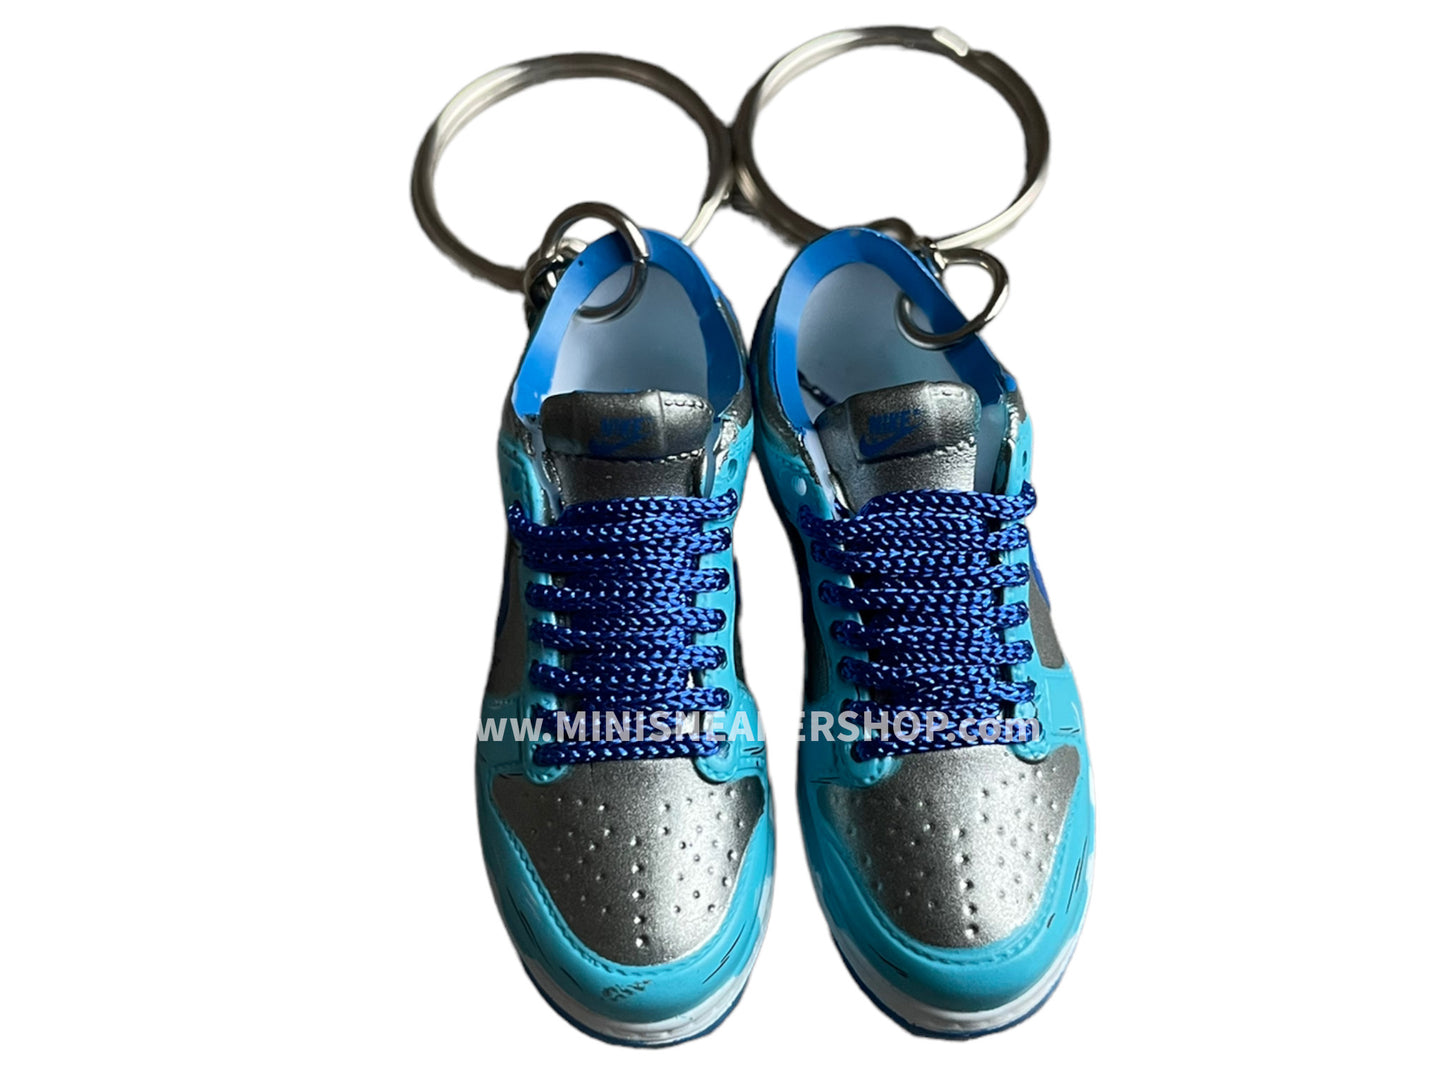 Mini sneaker keychain 3D Dunk - Cartoon blue black